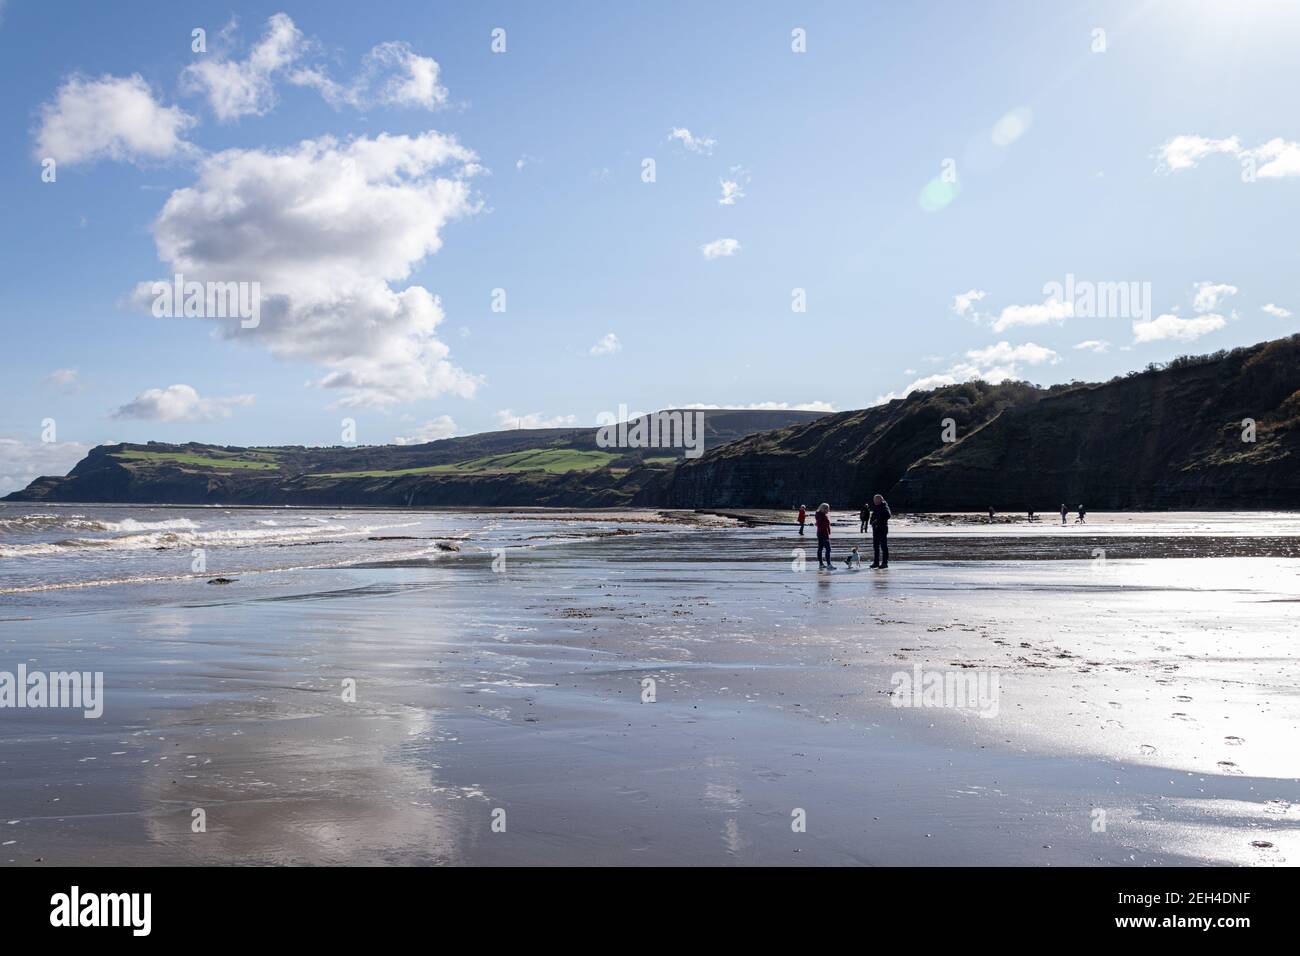 Vacanciers sur la plage à marée basse au soleil, Robin Hood Bay, Yorkshire, Angleterre Banque D'Images